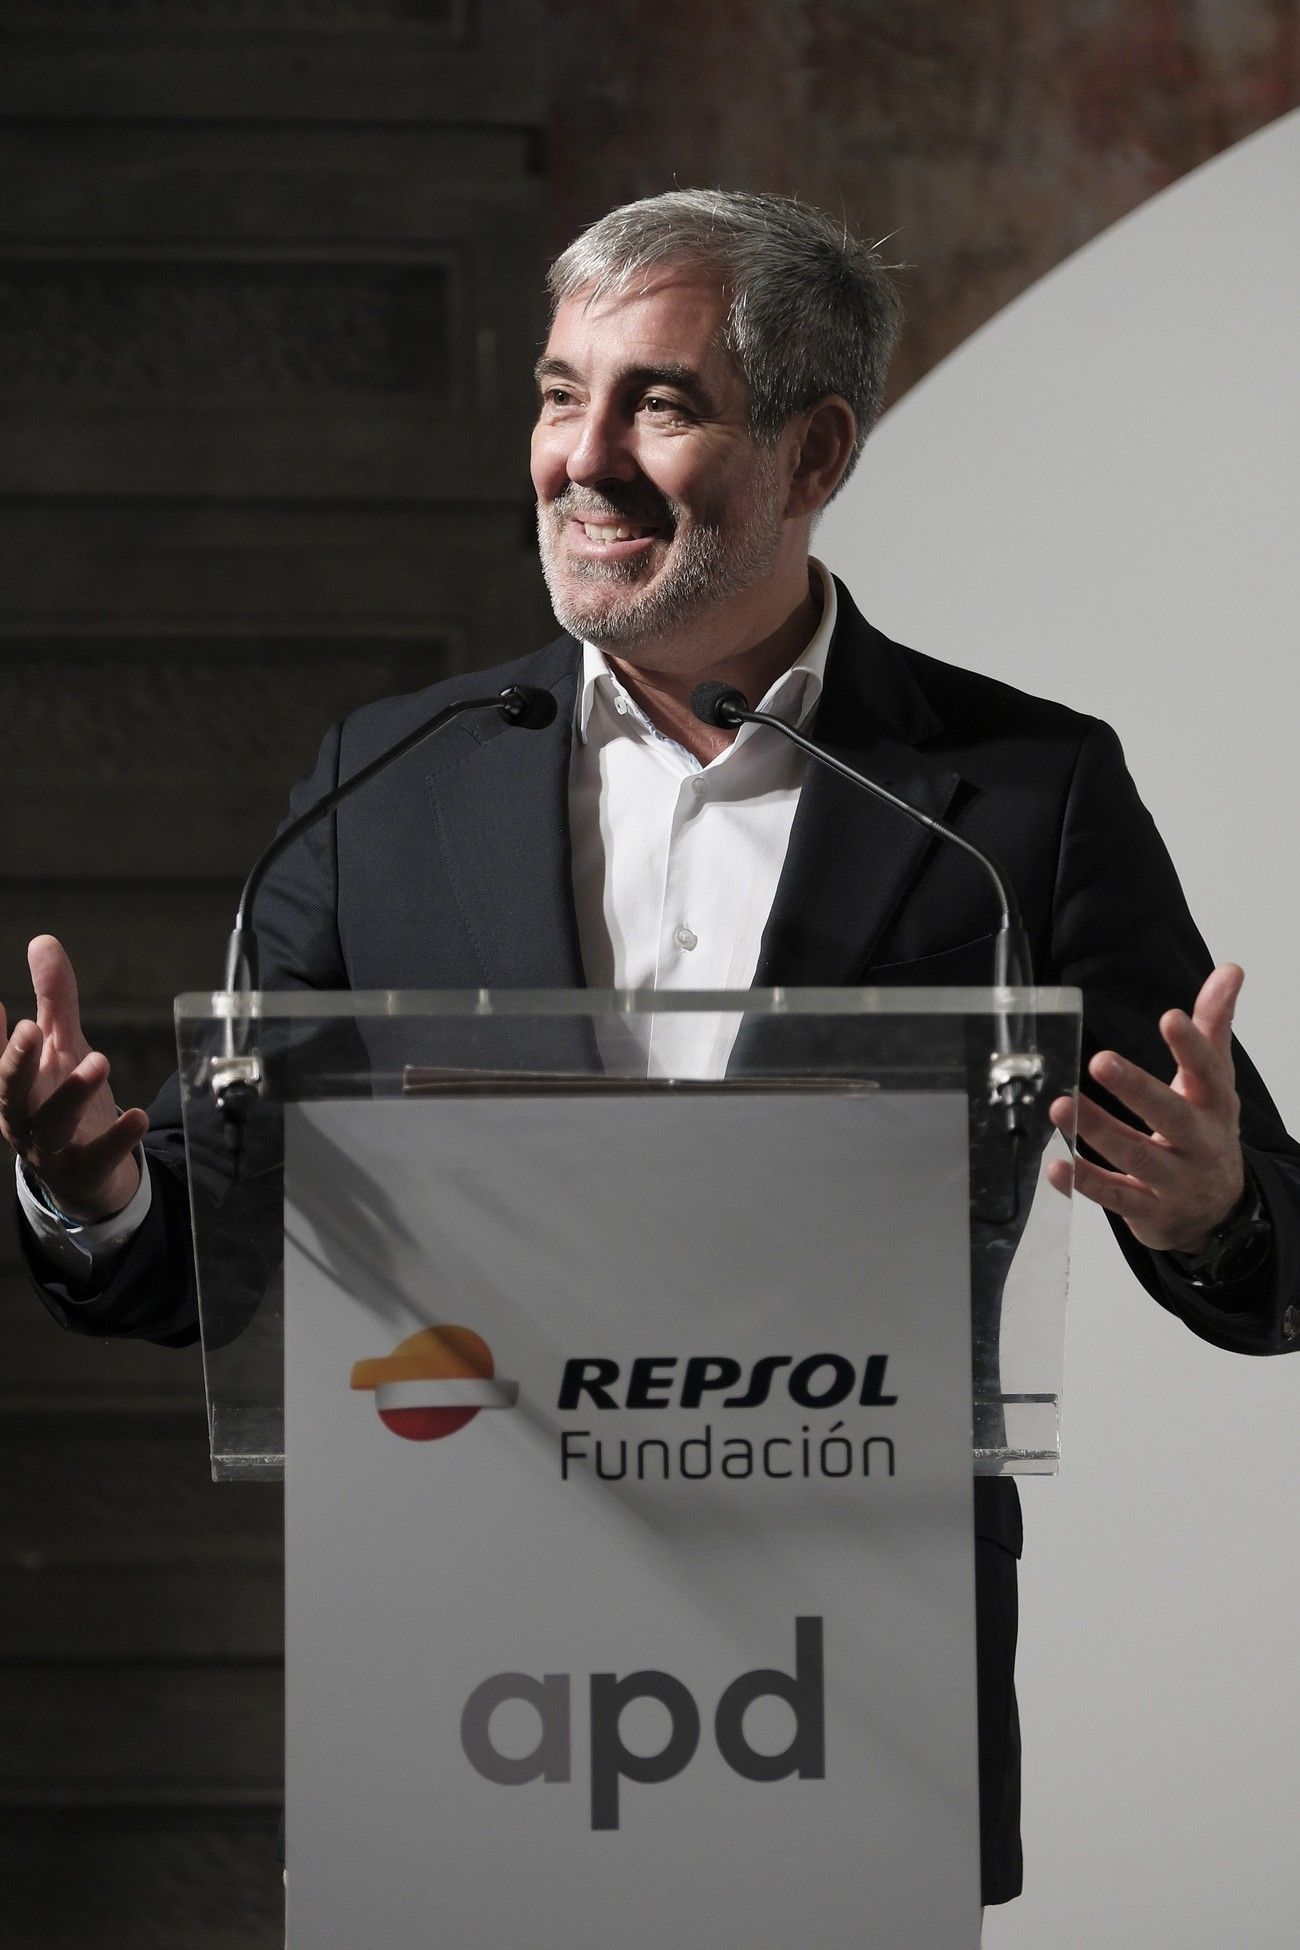 Repsol afirma que Canarias cuenta con un modelo energético "obsoleto y fallido" y puede cambiarlo